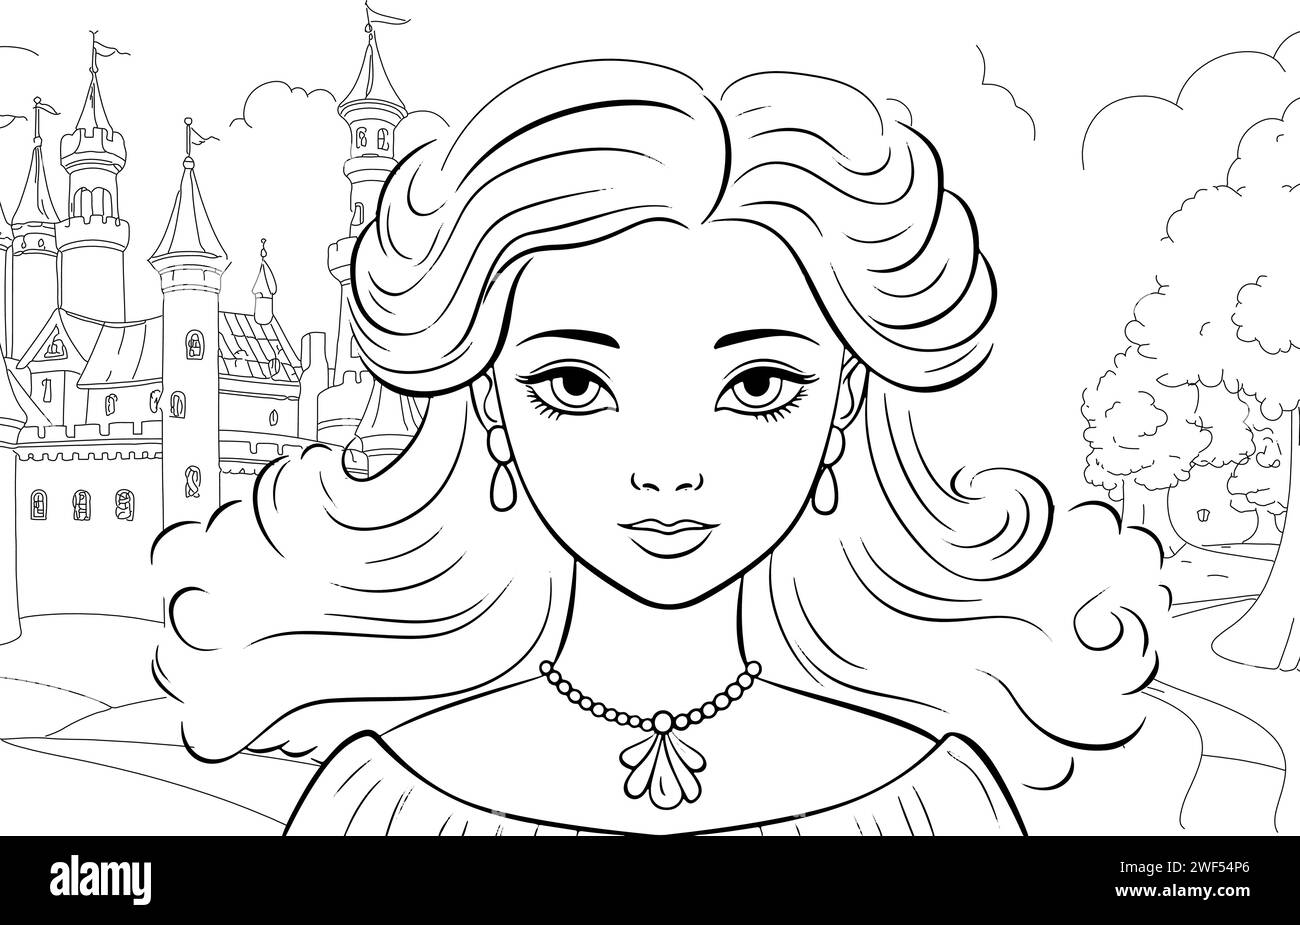 Arte Antiestres Para Colorear Disney Princesa Princesas Encantadoras